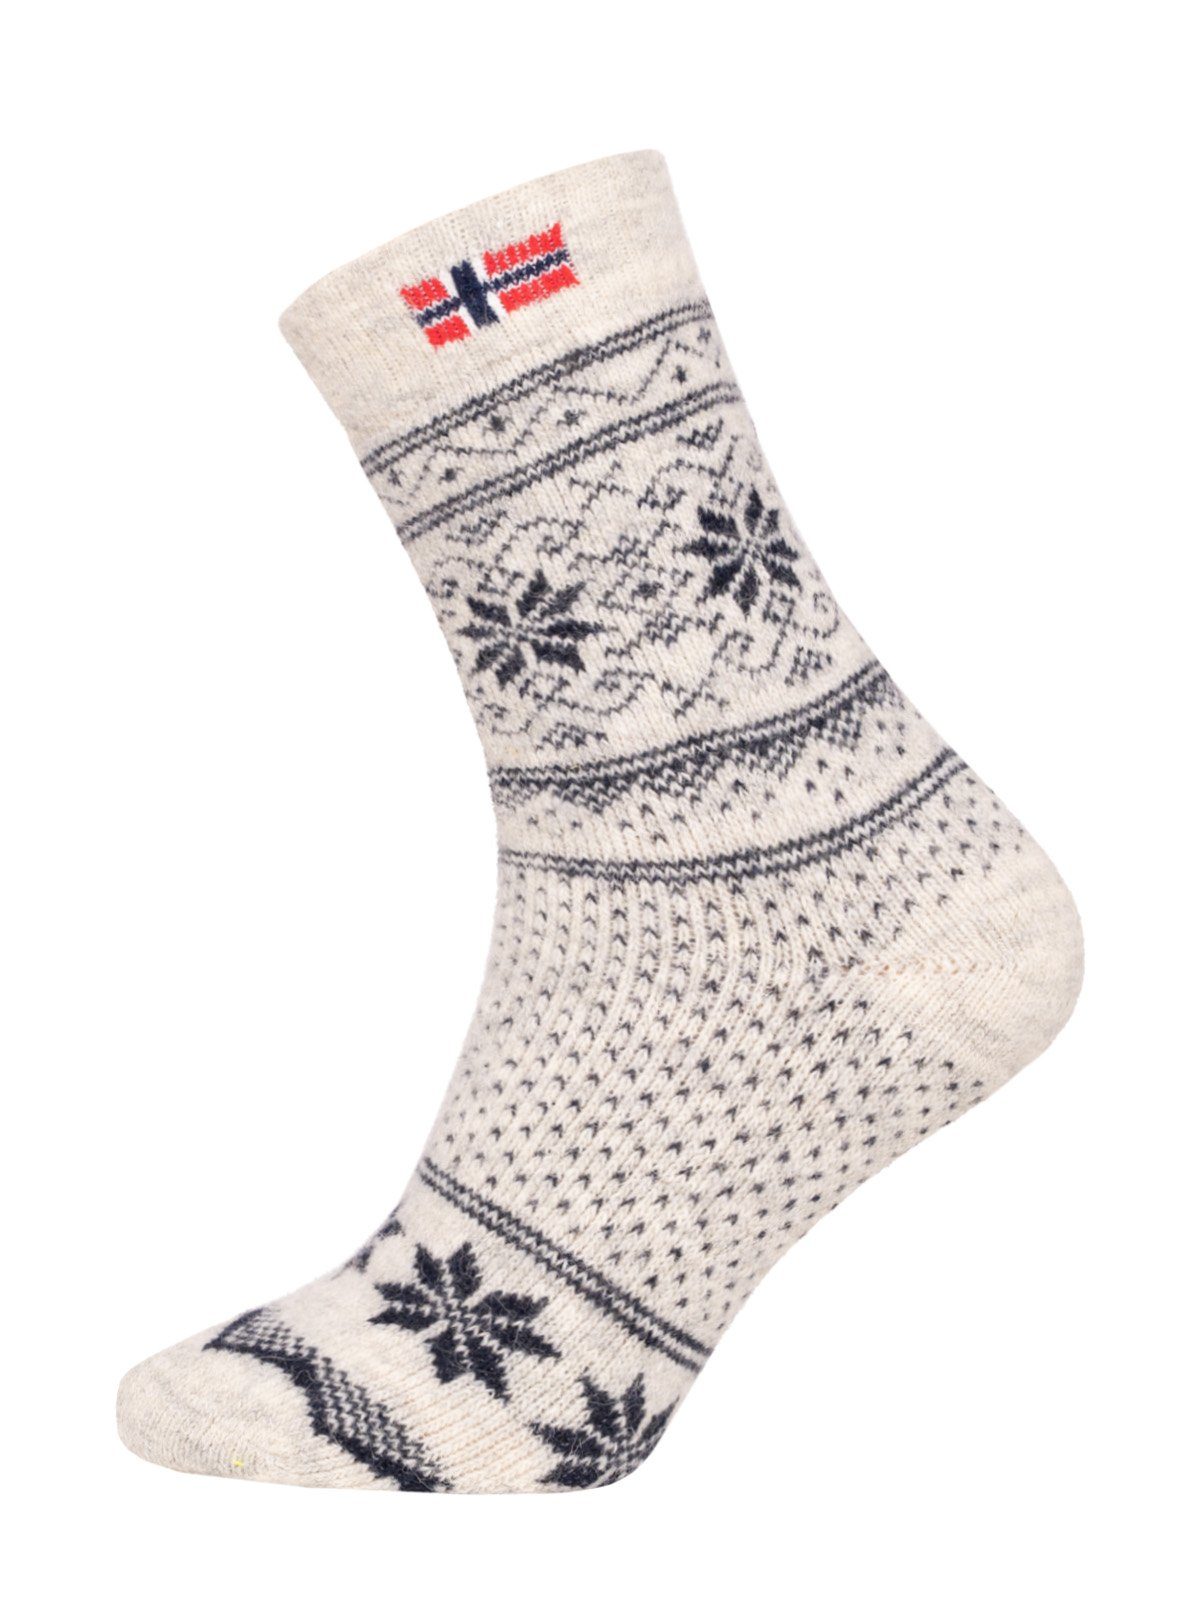 HomeOfSocks Norwegersocken Skandinavische Wollsocke "Jacquard Norwegen" Nordic Kuschelsocken Dicke Socken Hyggelig Warm Hoher 80% Wollanteil Norwegischem Design Navy